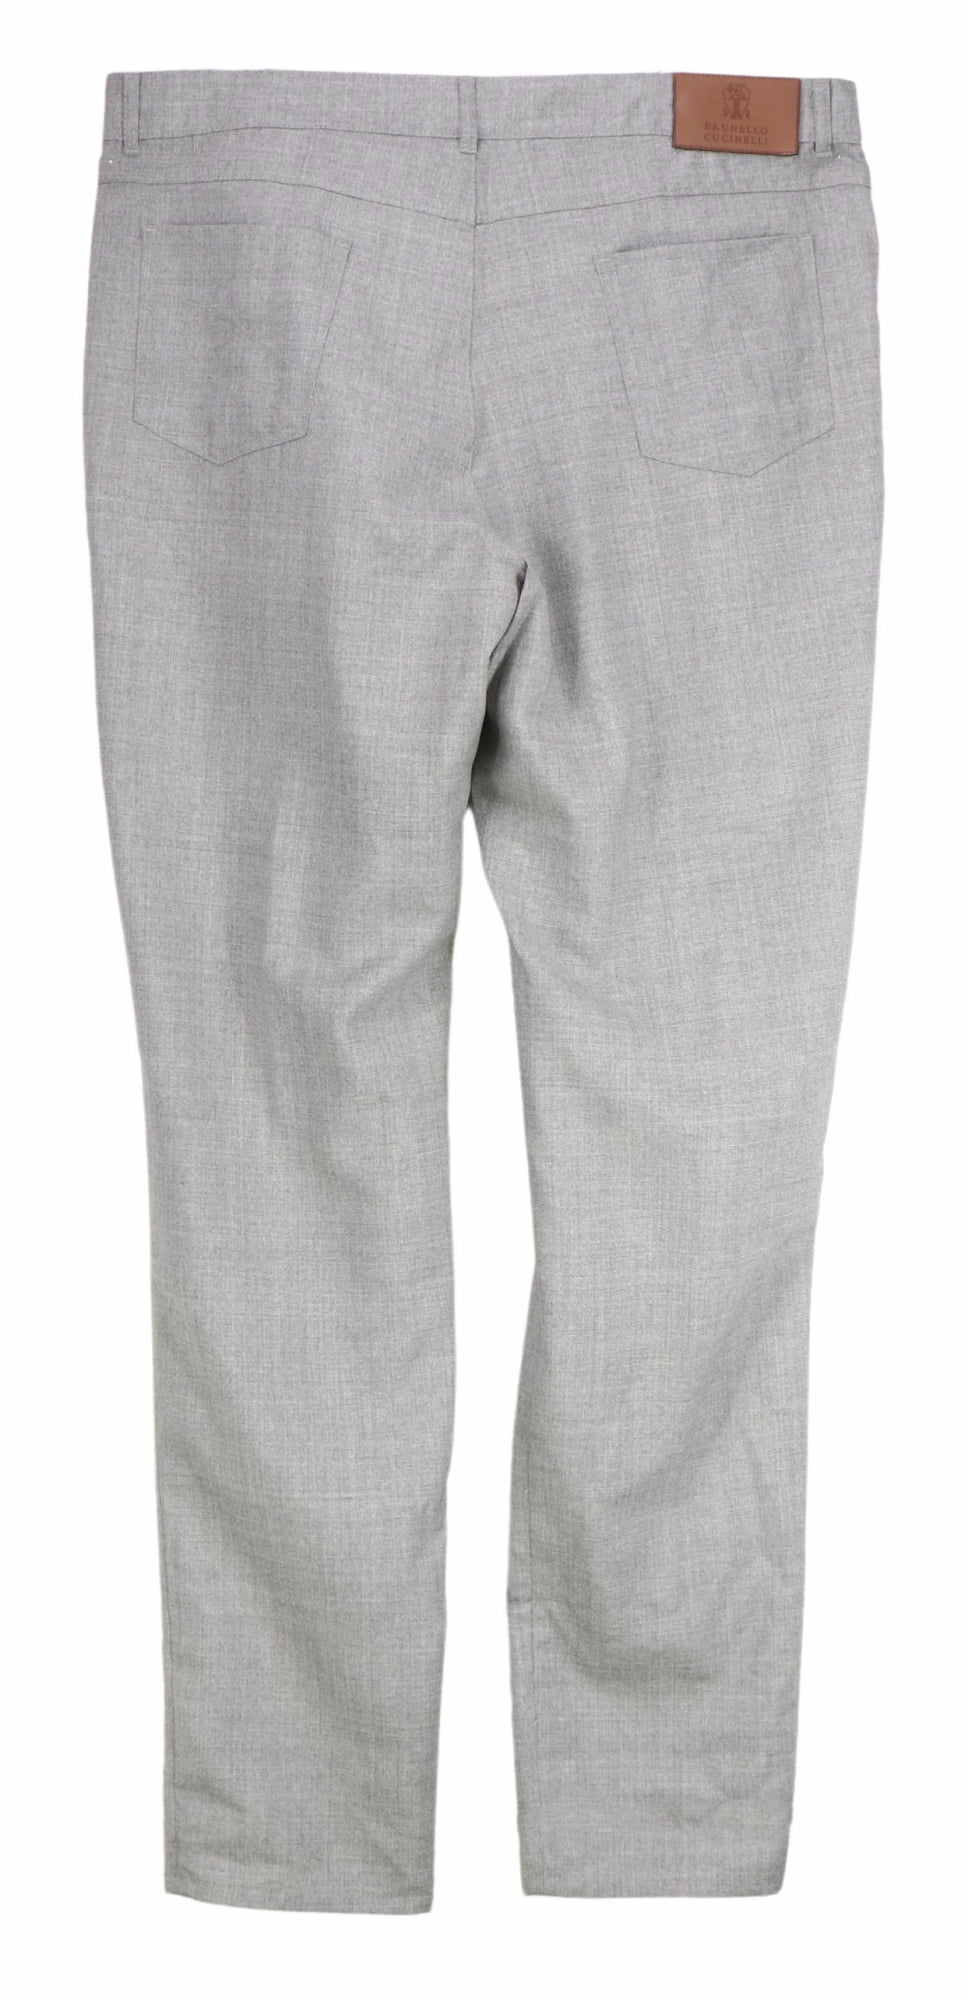 Brunello Cucinelli Men's Light Grey Wool Flannel 5 Pocket Pants Dress - 46